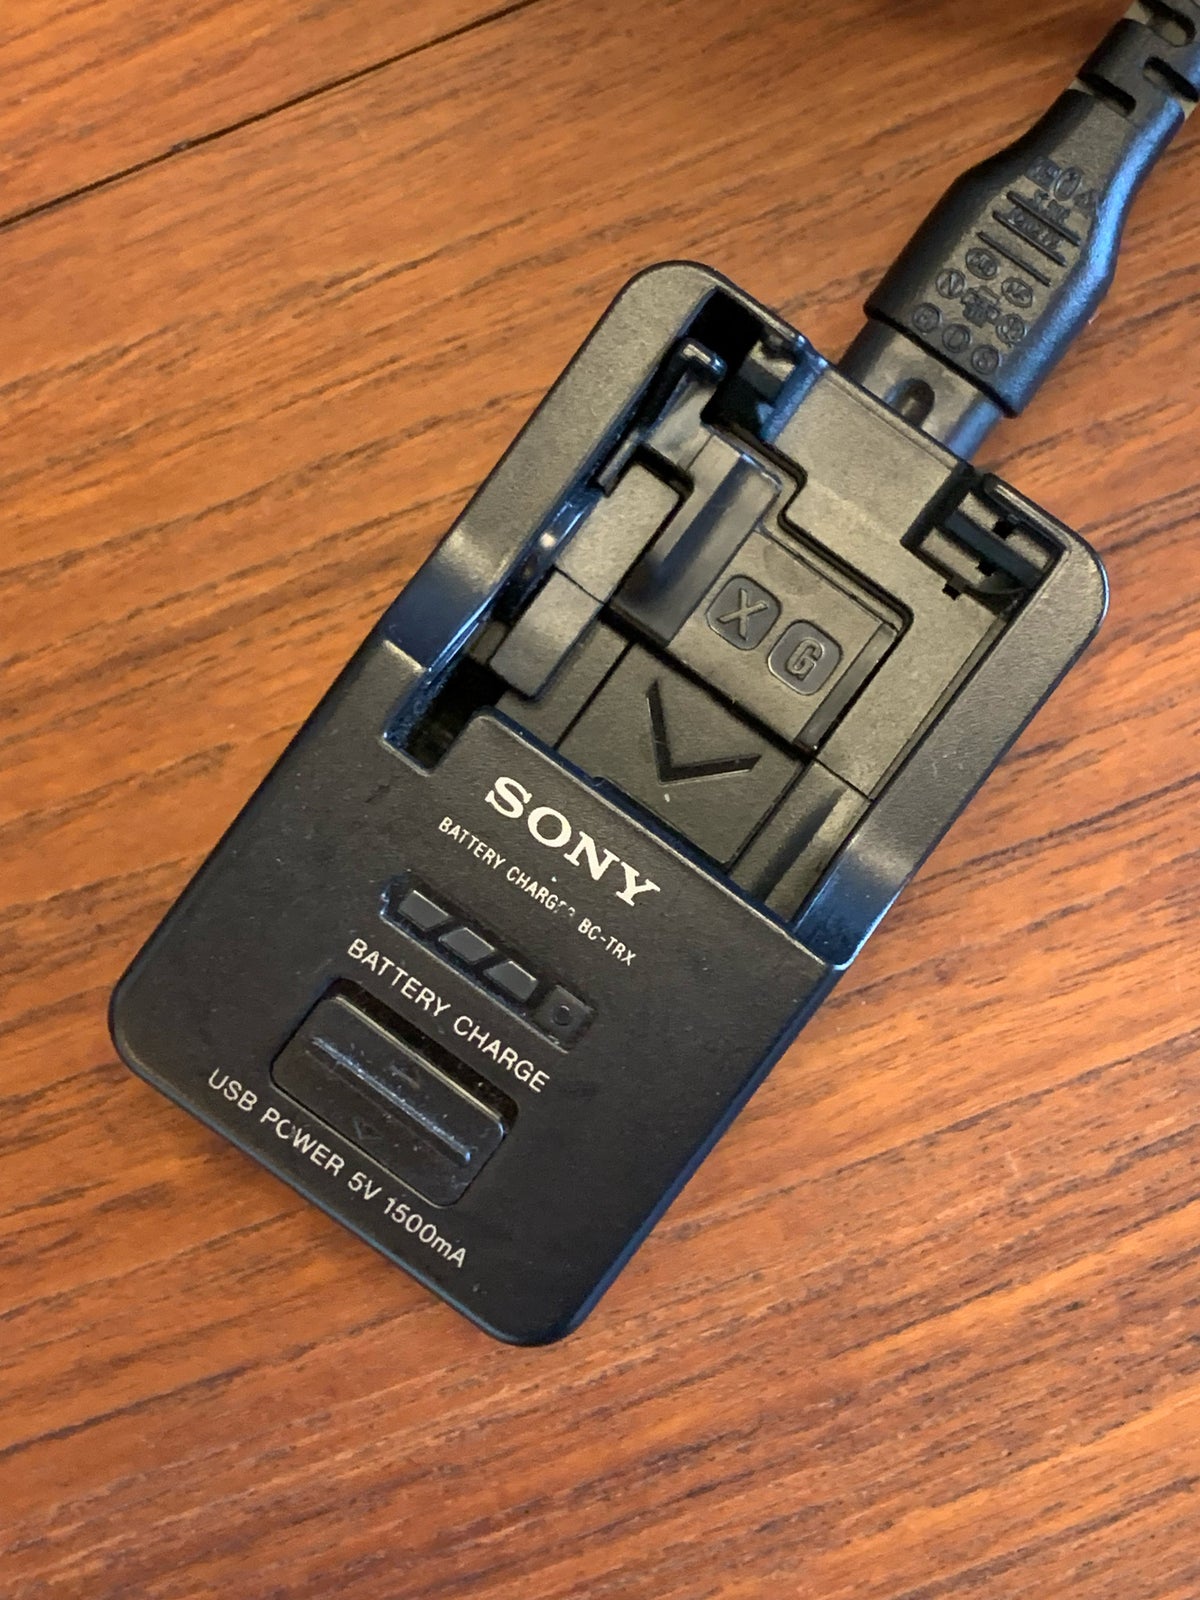 Sony, RX100 IV, 20 megapixels